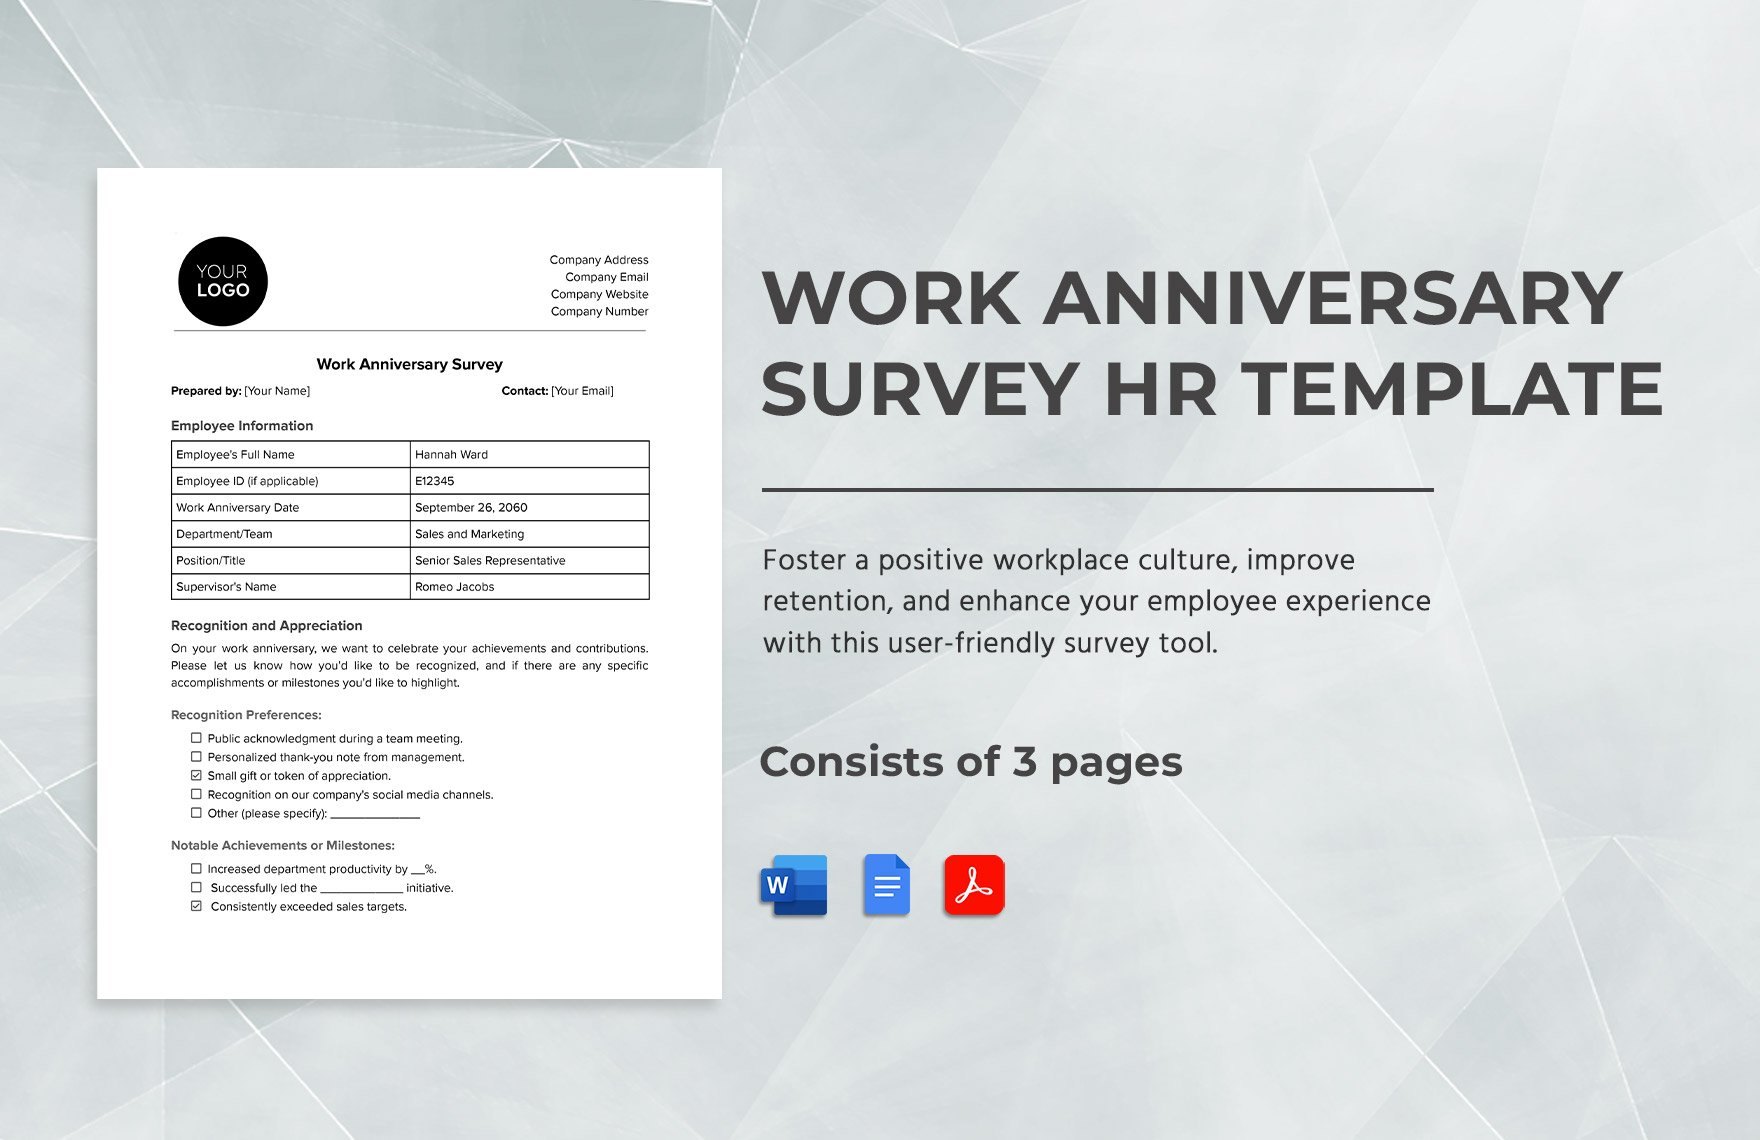 Work Anniversary Survey HR Template